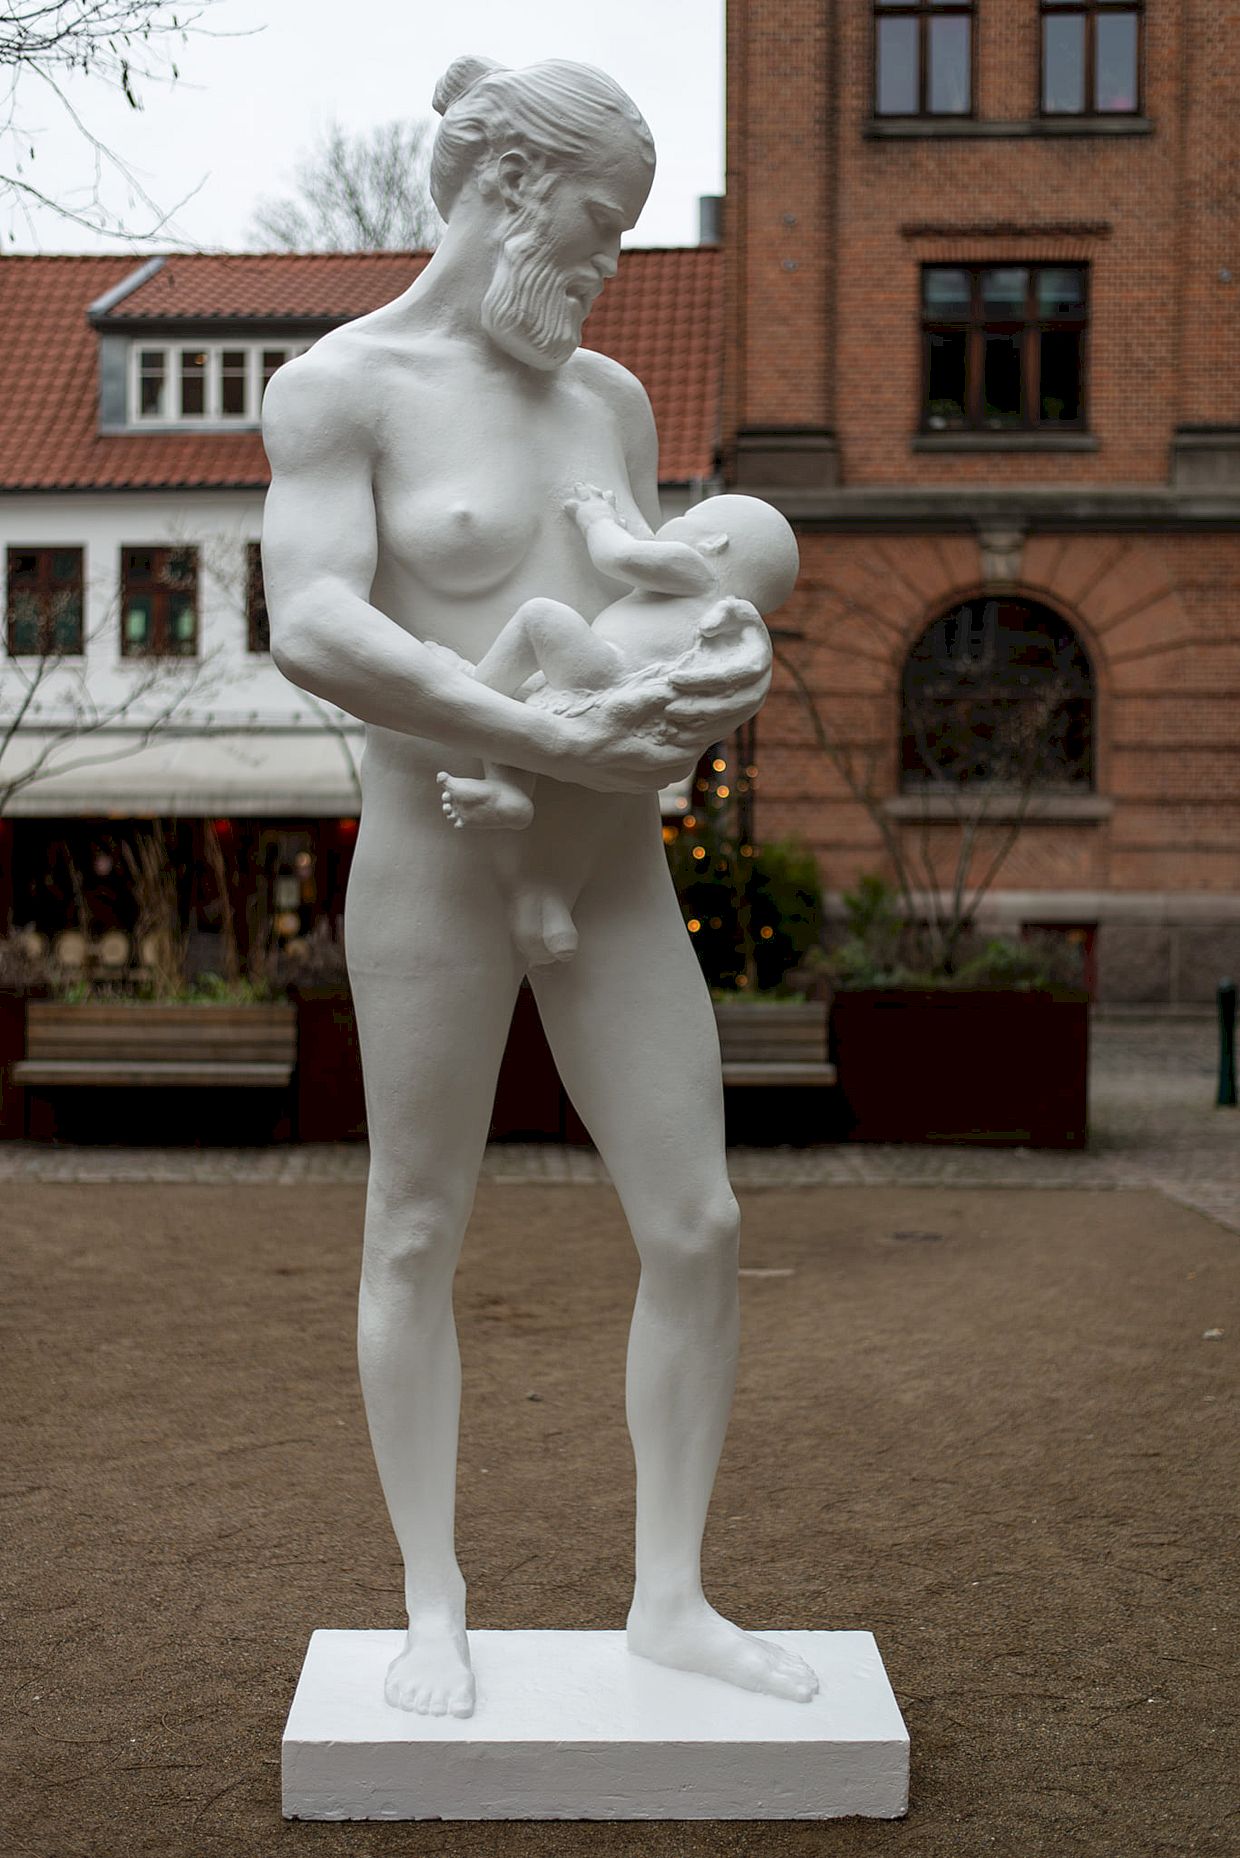 Εποχή των τρελών: Άγαλμα ενός άνδρα που θηλάζει στο Μουσείο Φύλου στη Δανία